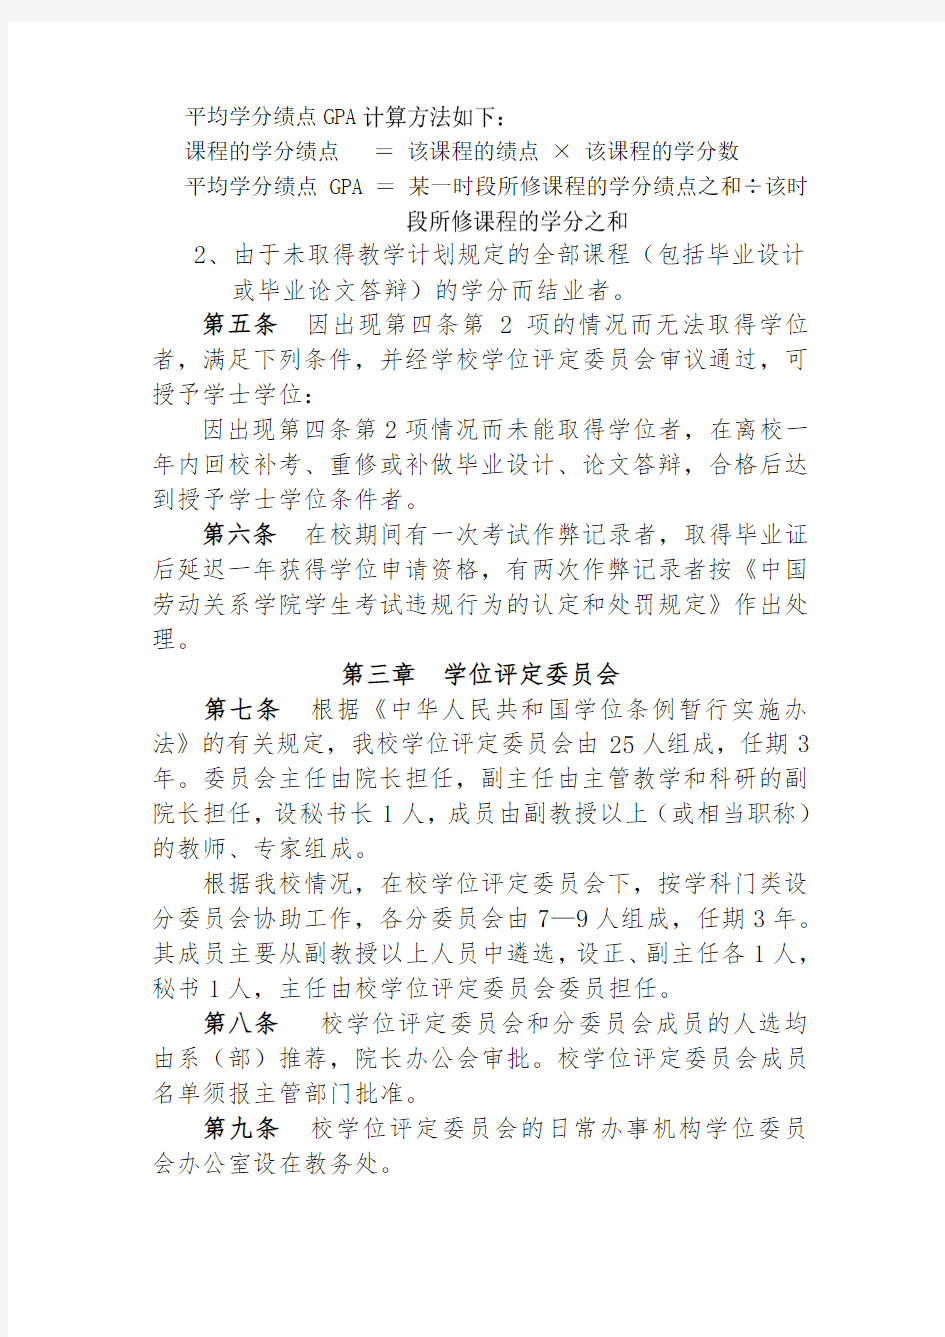 中国劳动关系学院授予学士学位工作细则